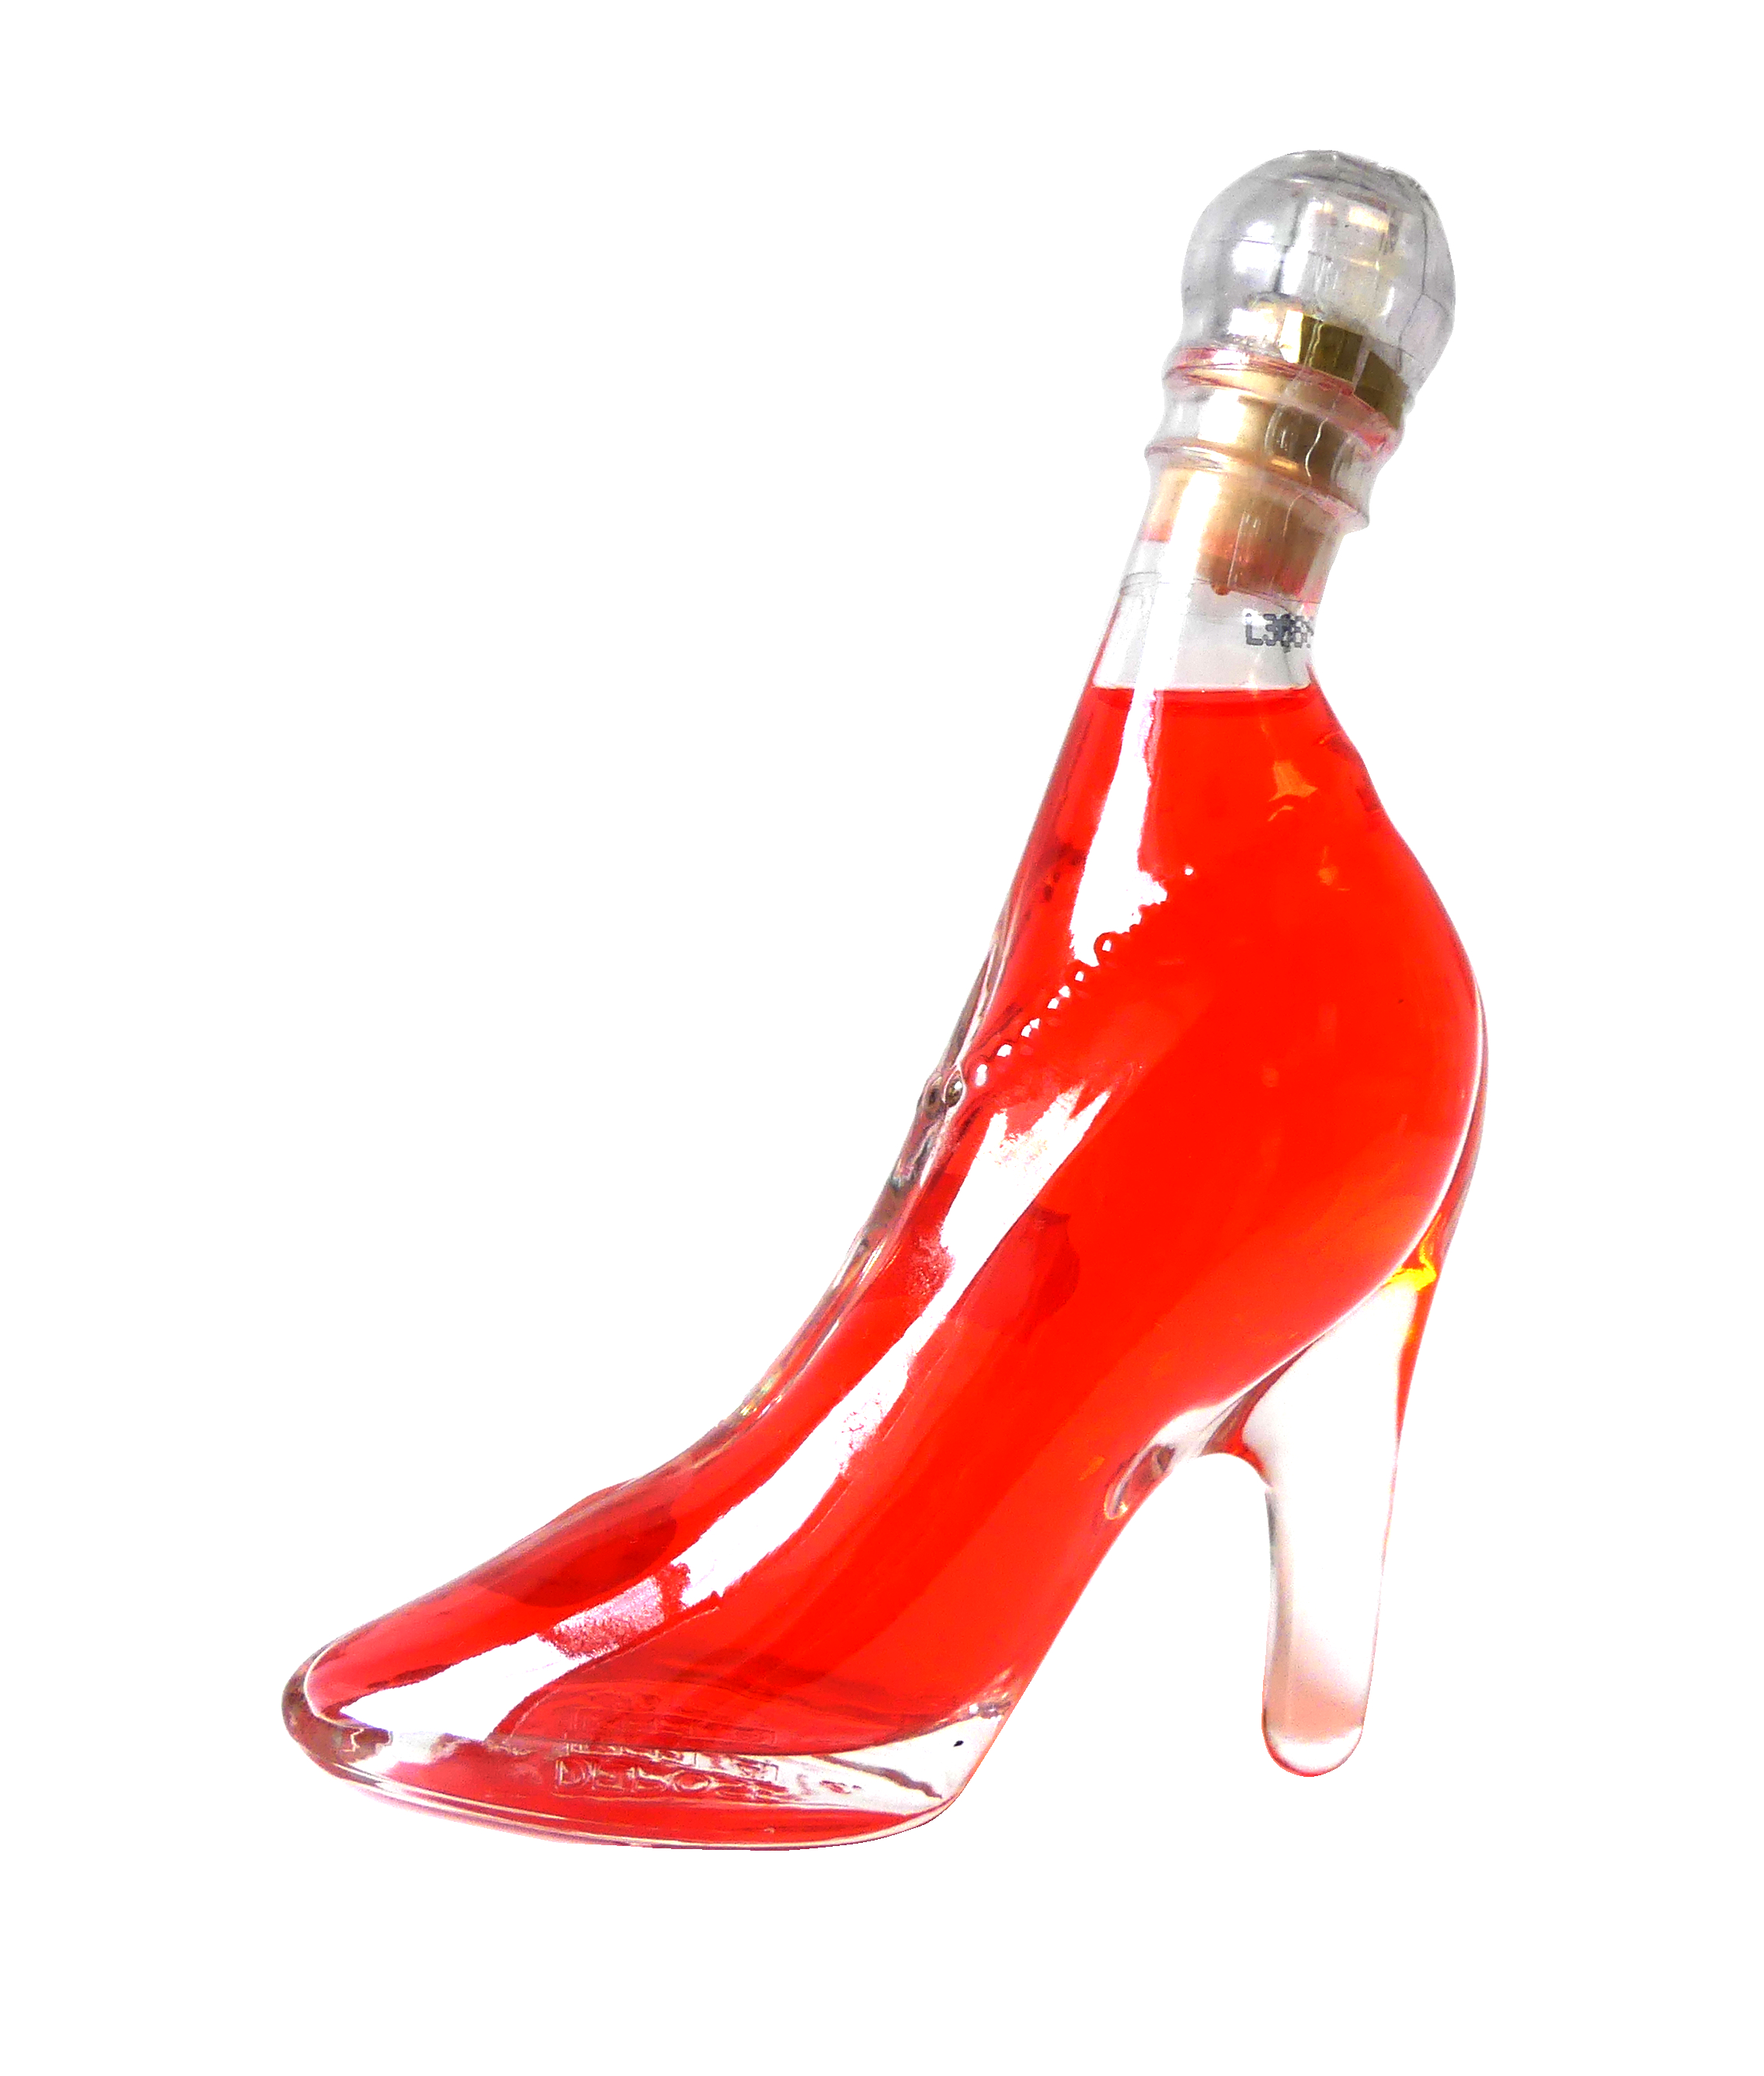 Nannerl Red Orange Liqueur in a Bottle "Glass Slipper" 0.04l - Miniature